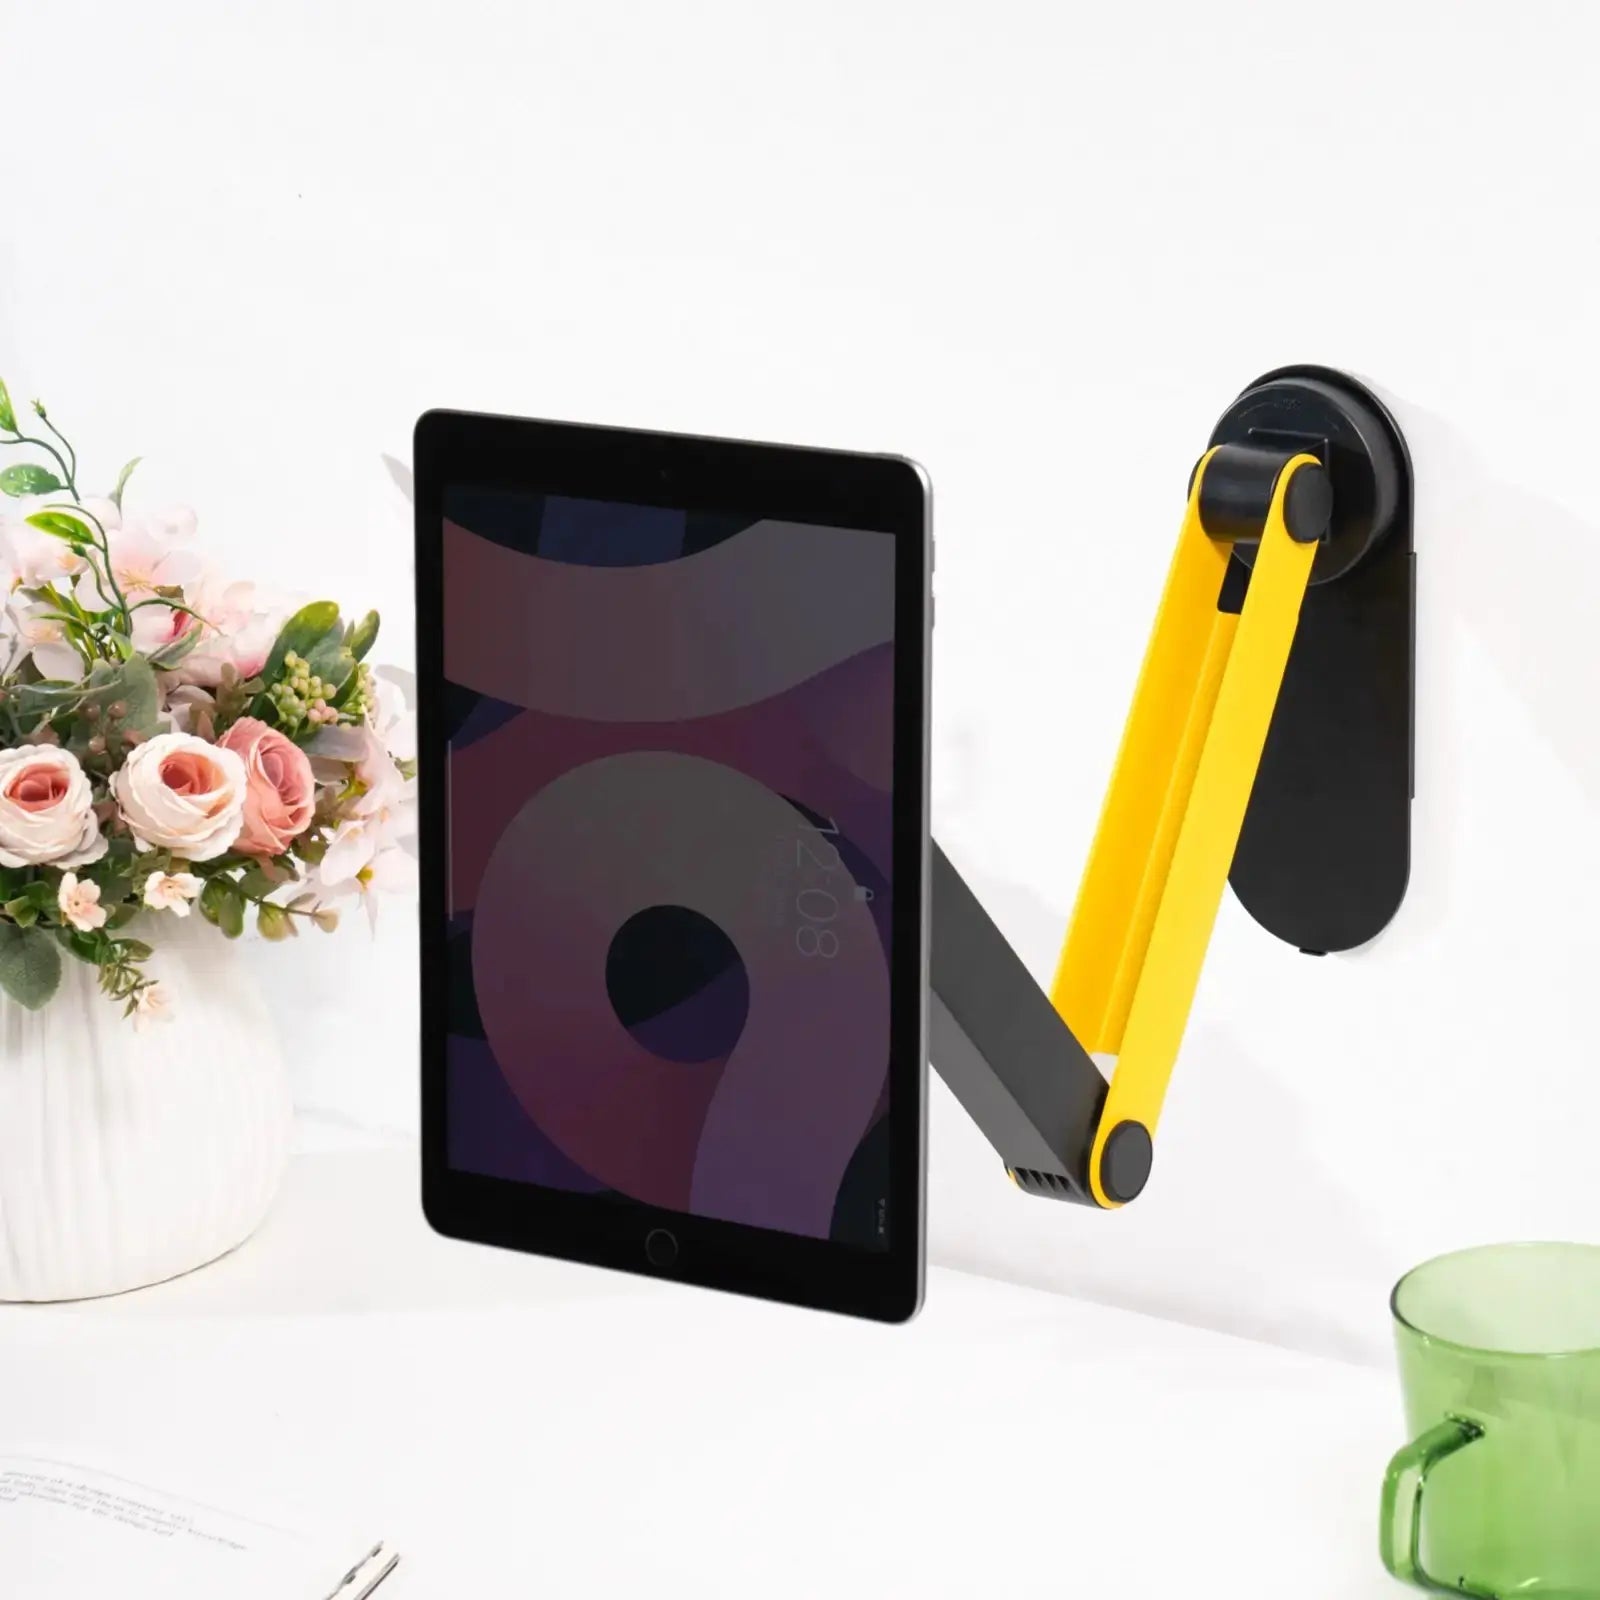 Adjustable Magnetic Phone&Tablet Holder Cool Gadget